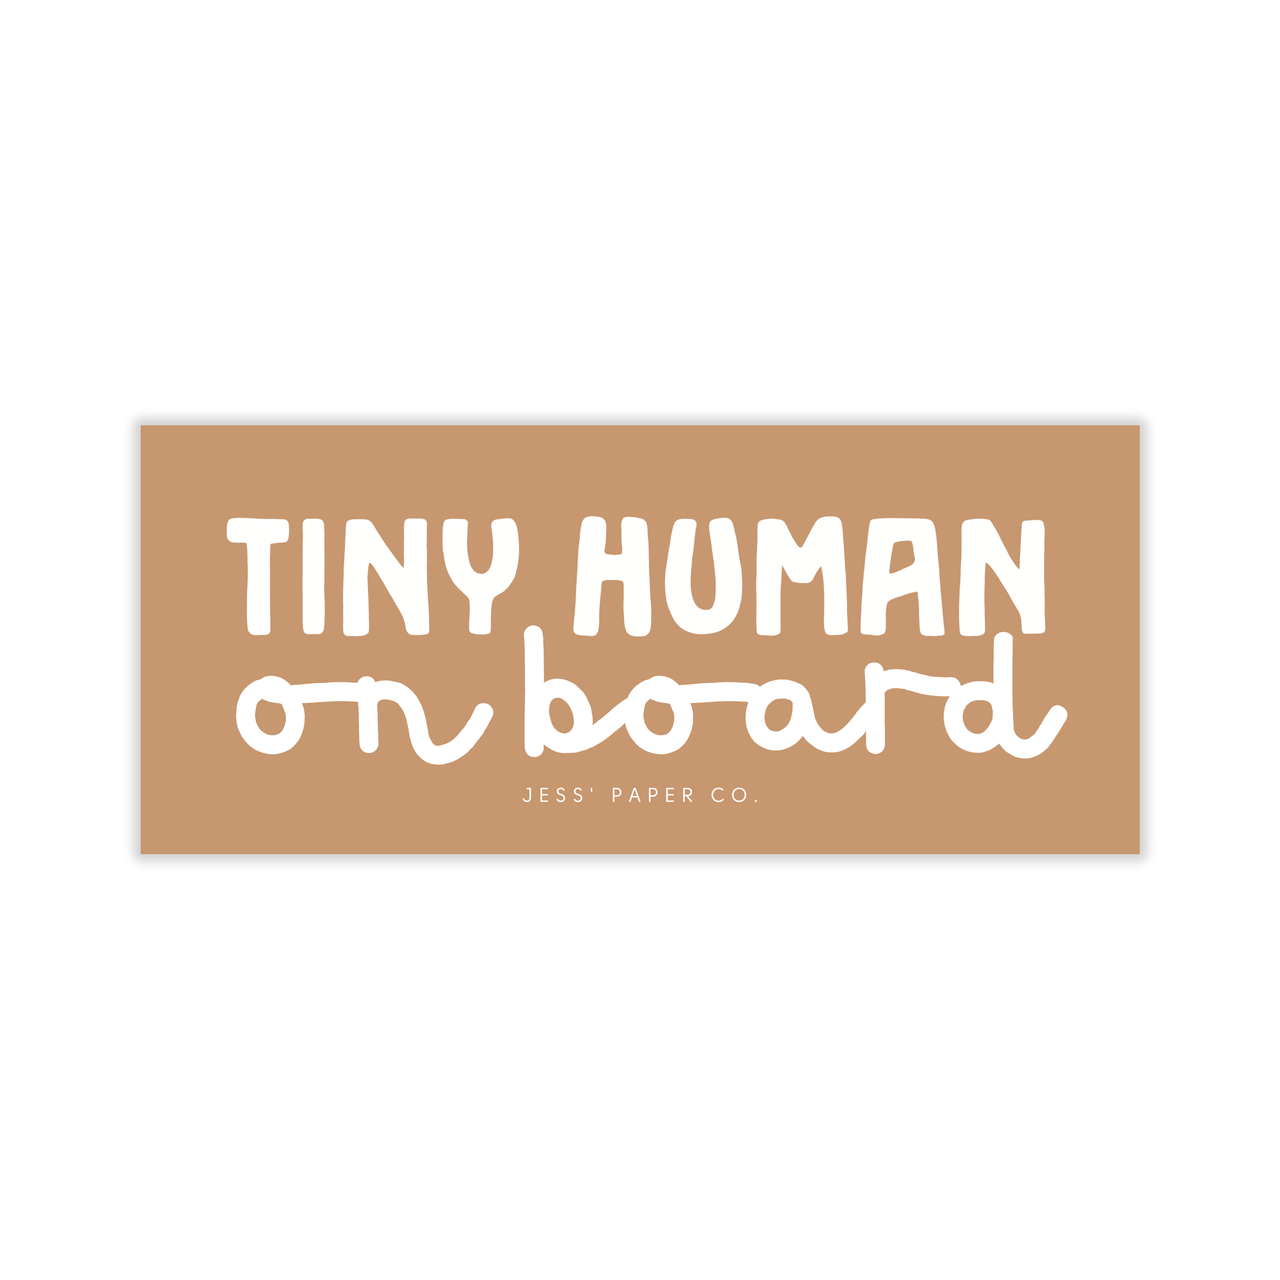 Tiny Human on Board Bumper Sticker